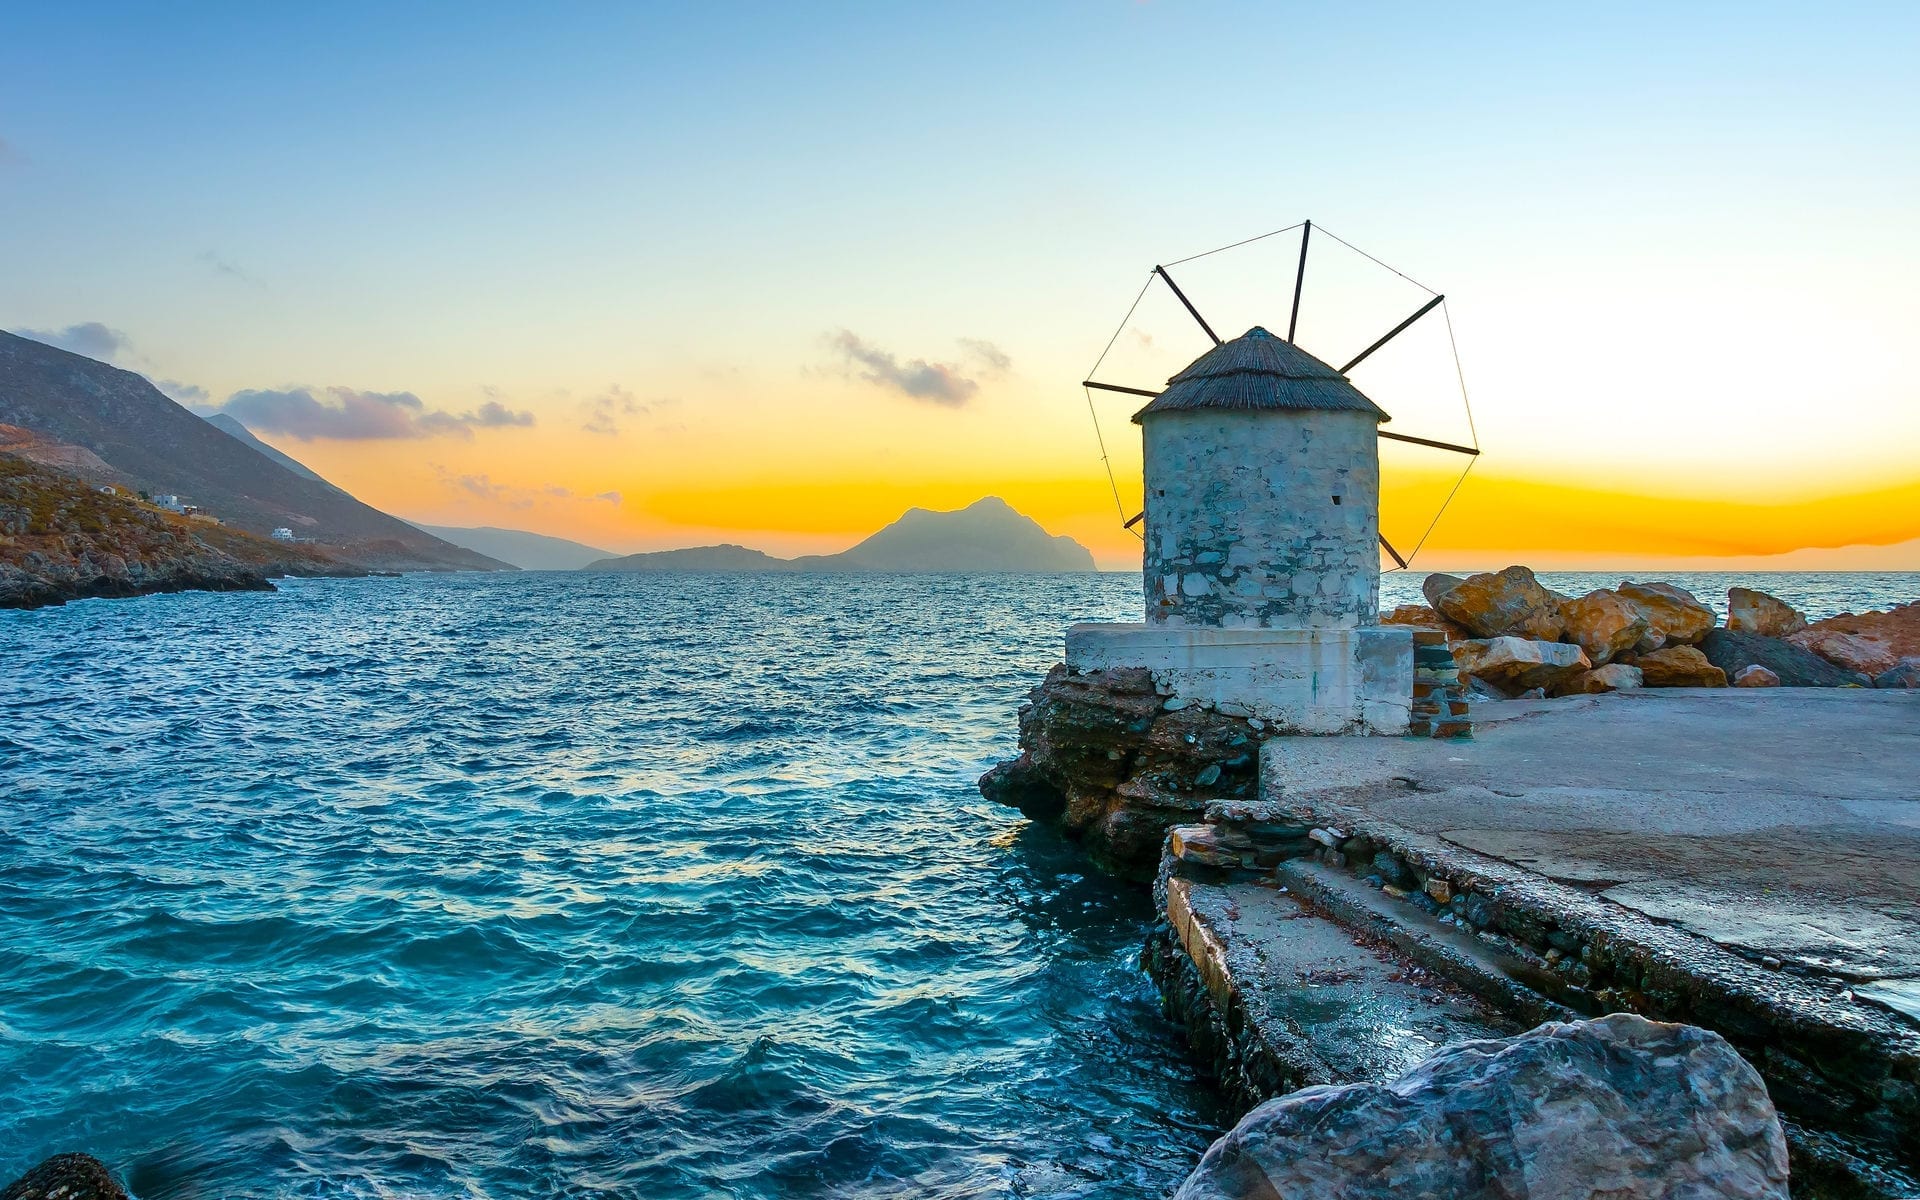 Île d'Amorgos : le guide pour s'y rendre à l'été 2022 - Île d'Amorgos : le guide pour s'y rendre à l'été 2022